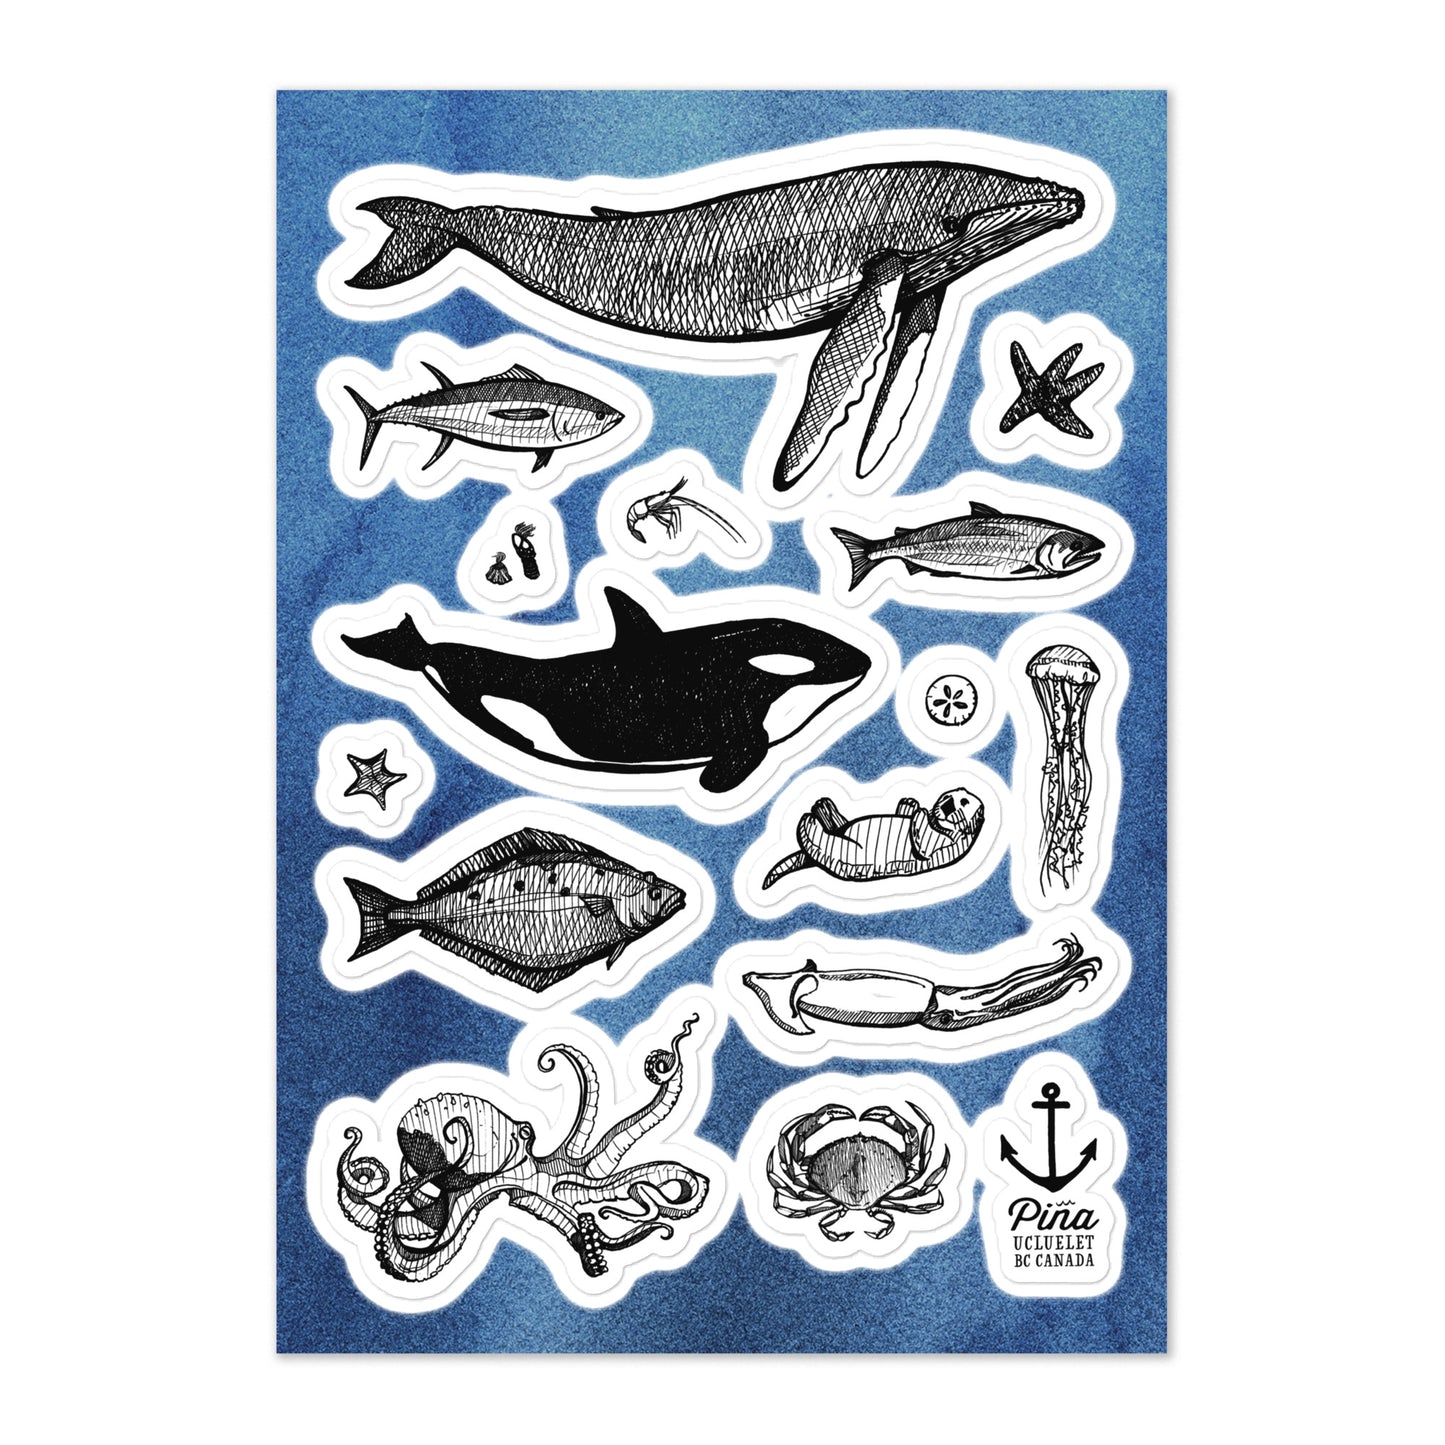 Species of Ucluelet Ocean Animals Sticker sheet